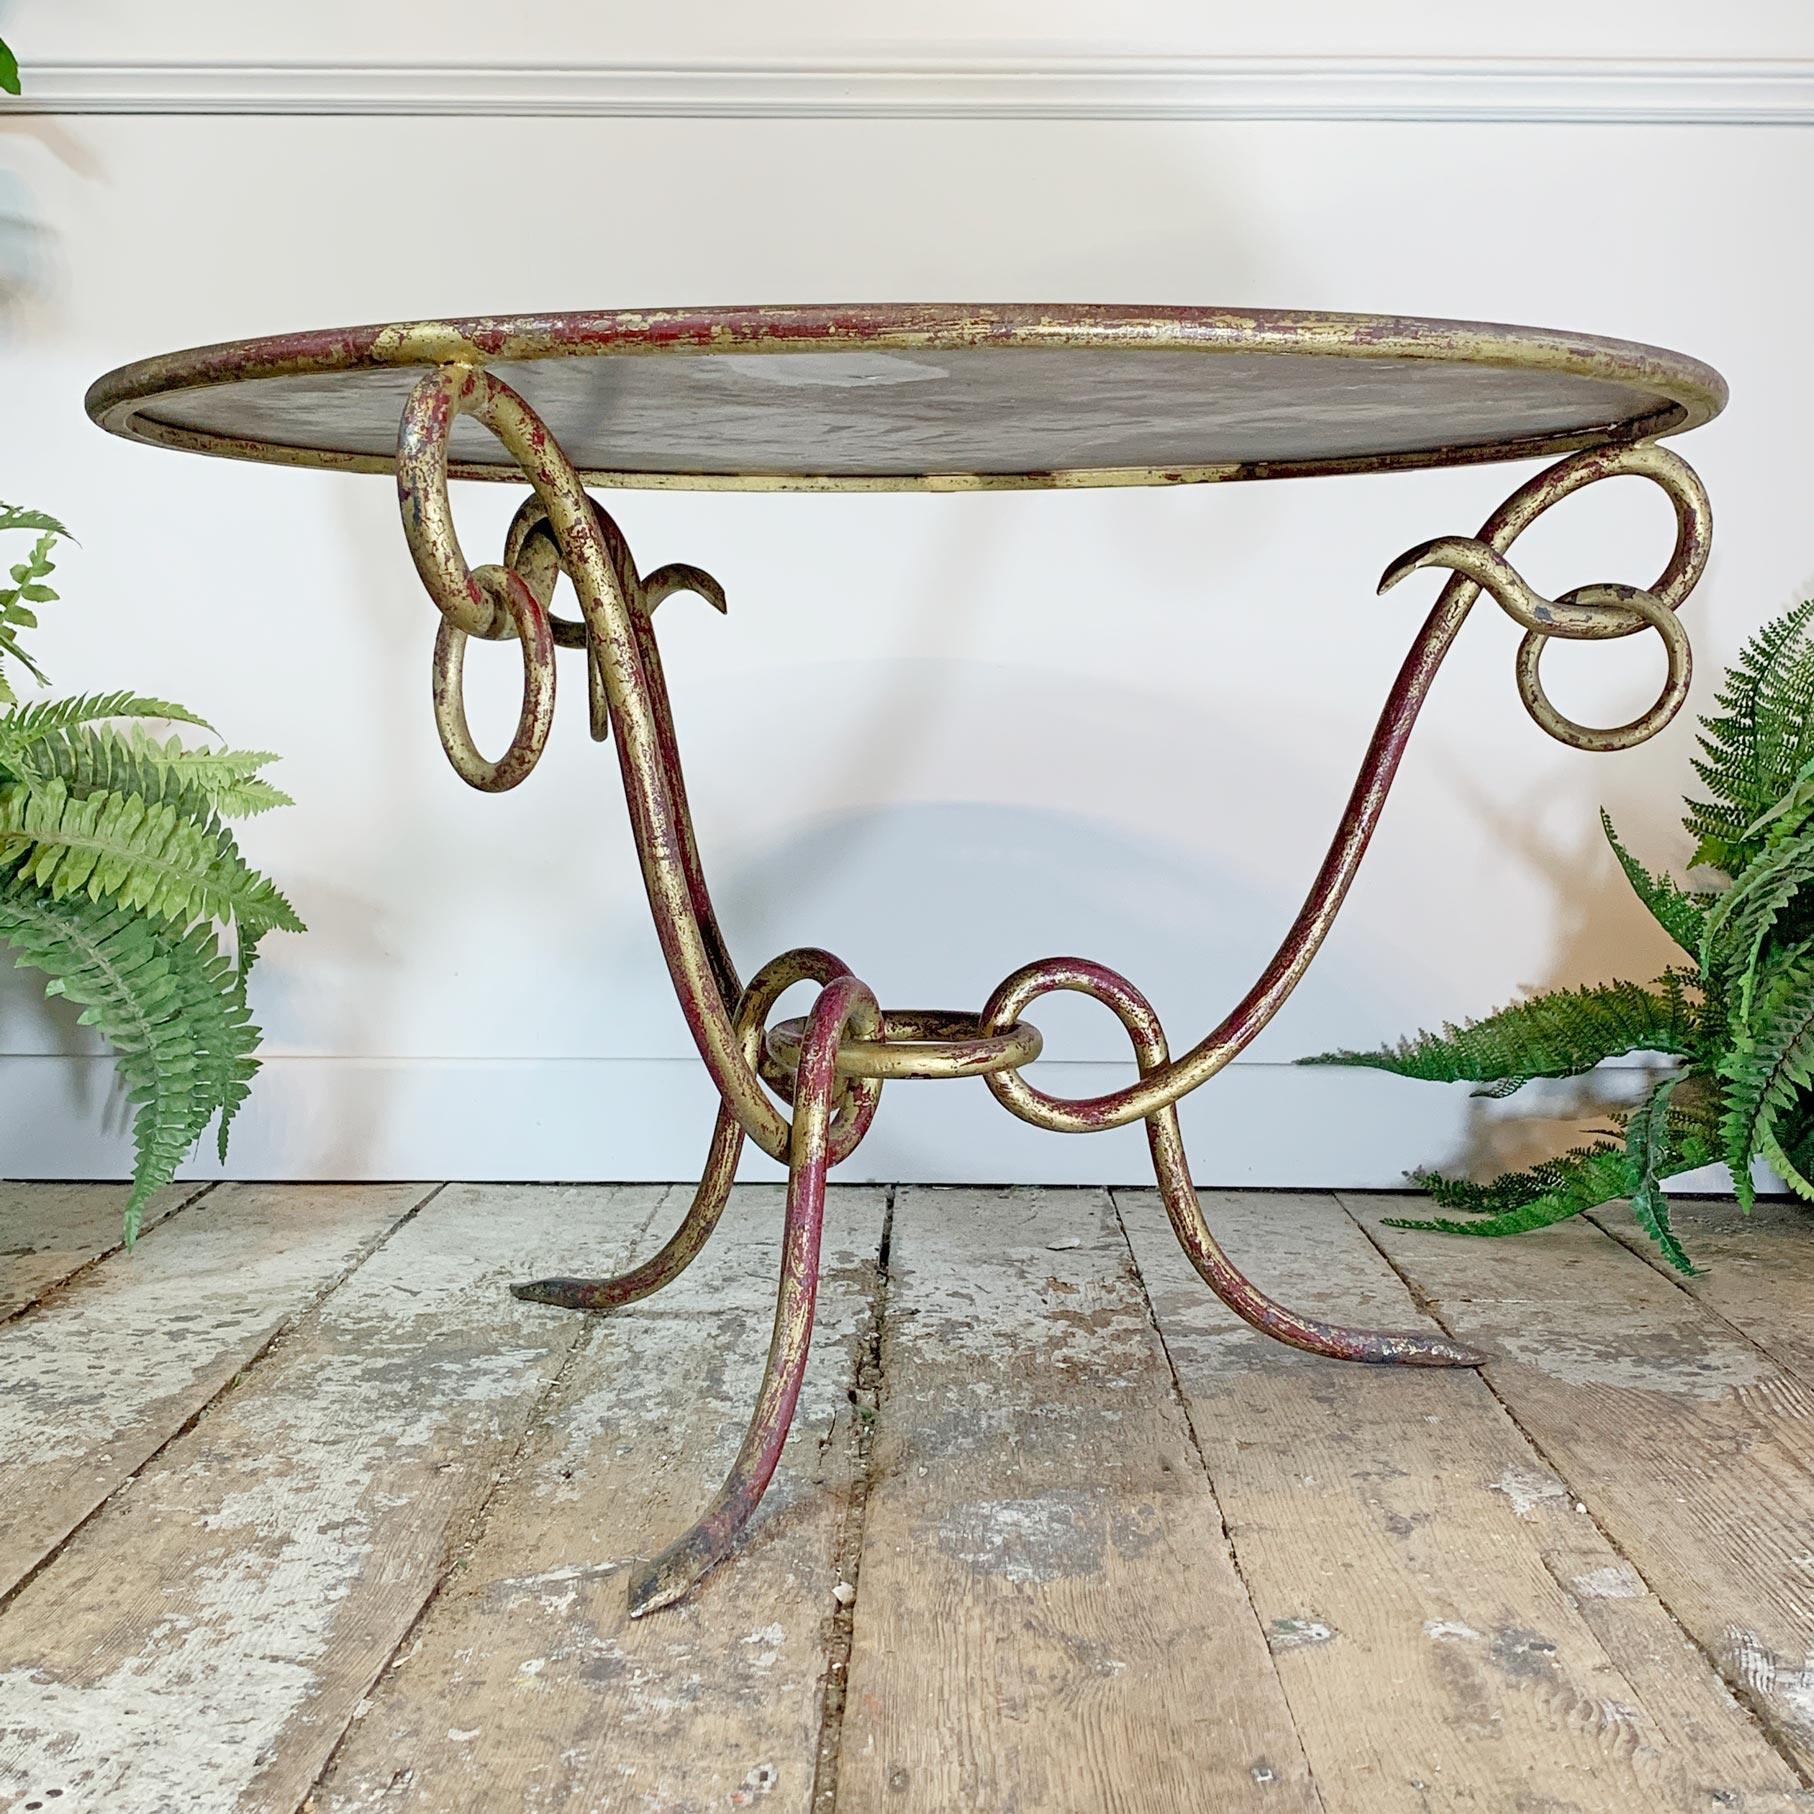 Exceptionnelle table basse en fer forgé doré avec plateau en tôle miroir vieillie du célèbre designer René Drouet 1899 -1993. 

La lourde base en fer forgé, avec des détails en anneau et un bole visible sous la dorure des pieds et des bords,